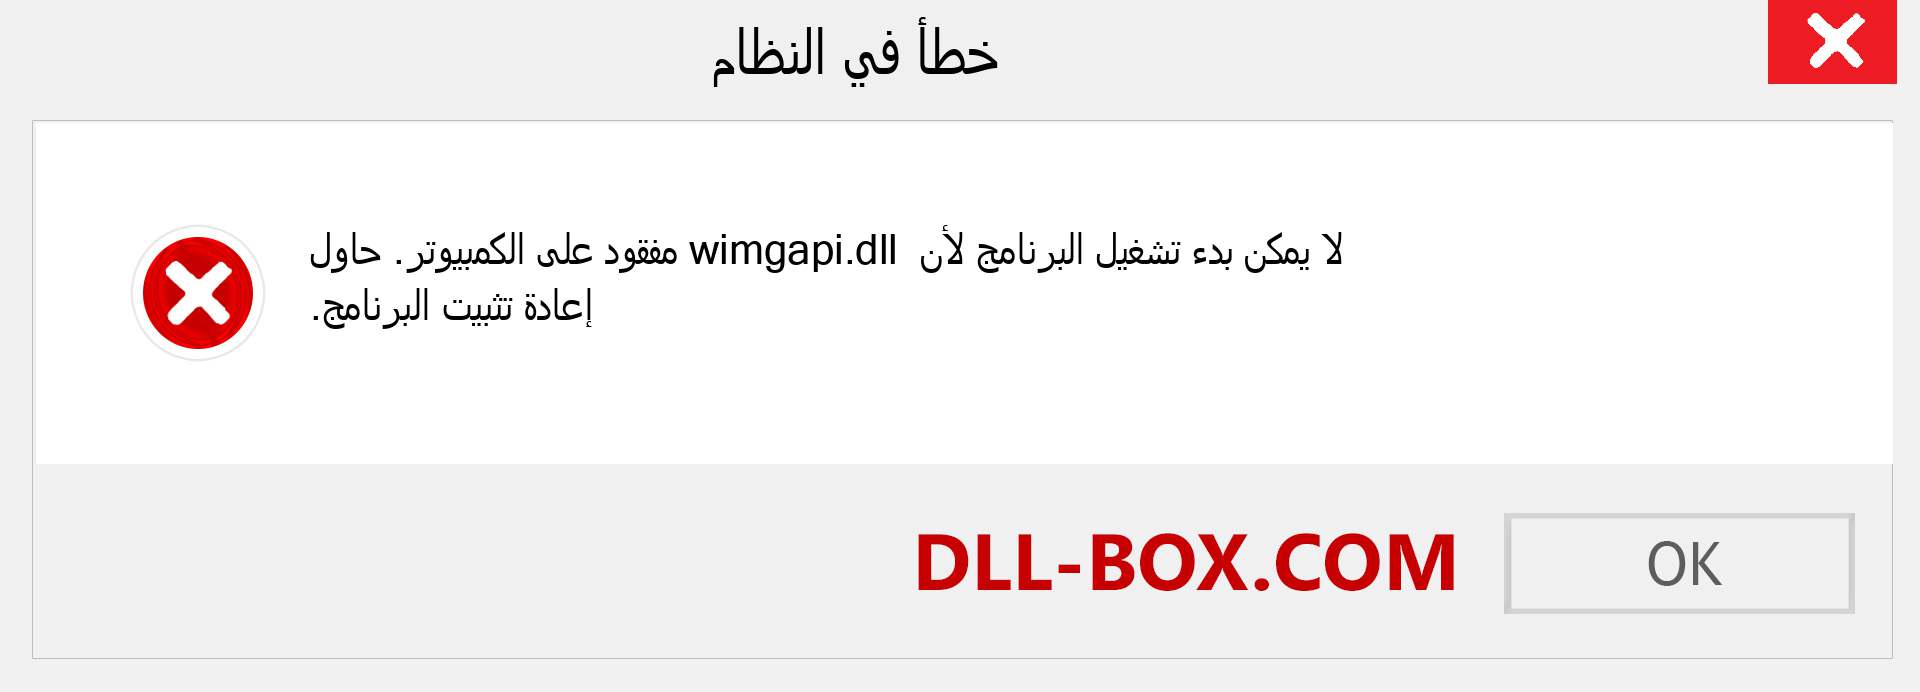 ملف wimgapi.dll مفقود ؟. التنزيل لنظام التشغيل Windows 7 و 8 و 10 - إصلاح خطأ wimgapi dll المفقود على Windows والصور والصور